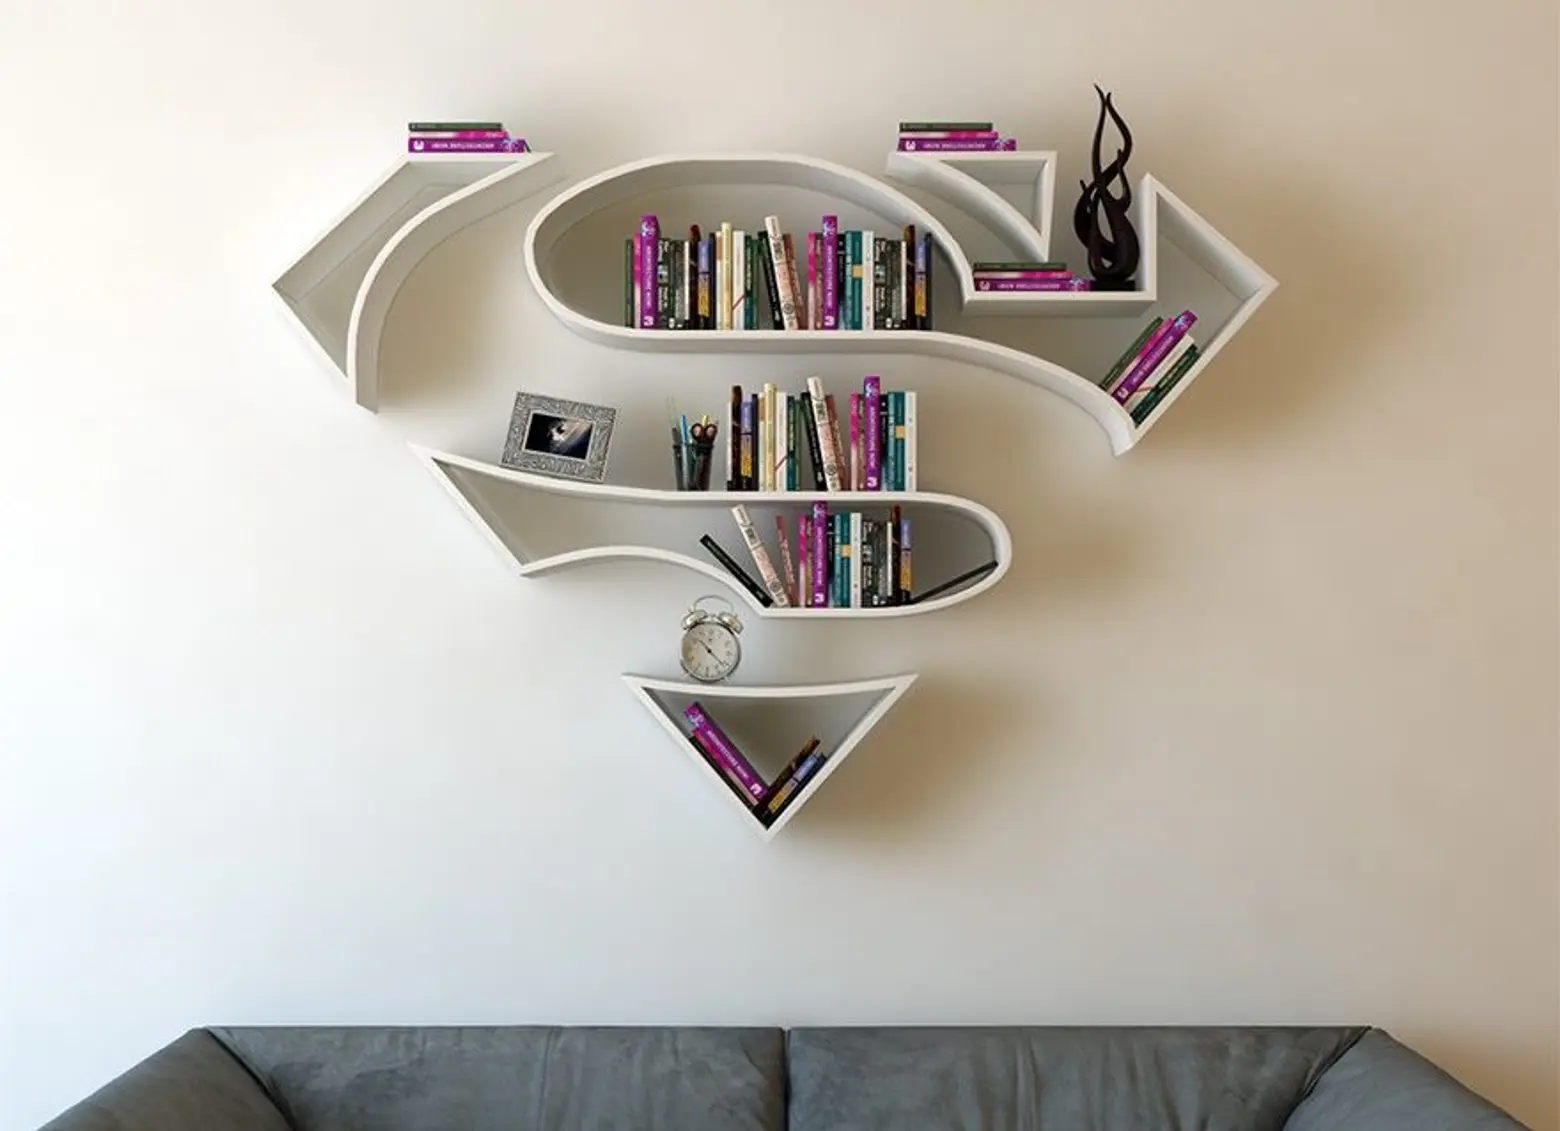 Superhero bookshelves transform your living room into a secret urban lair